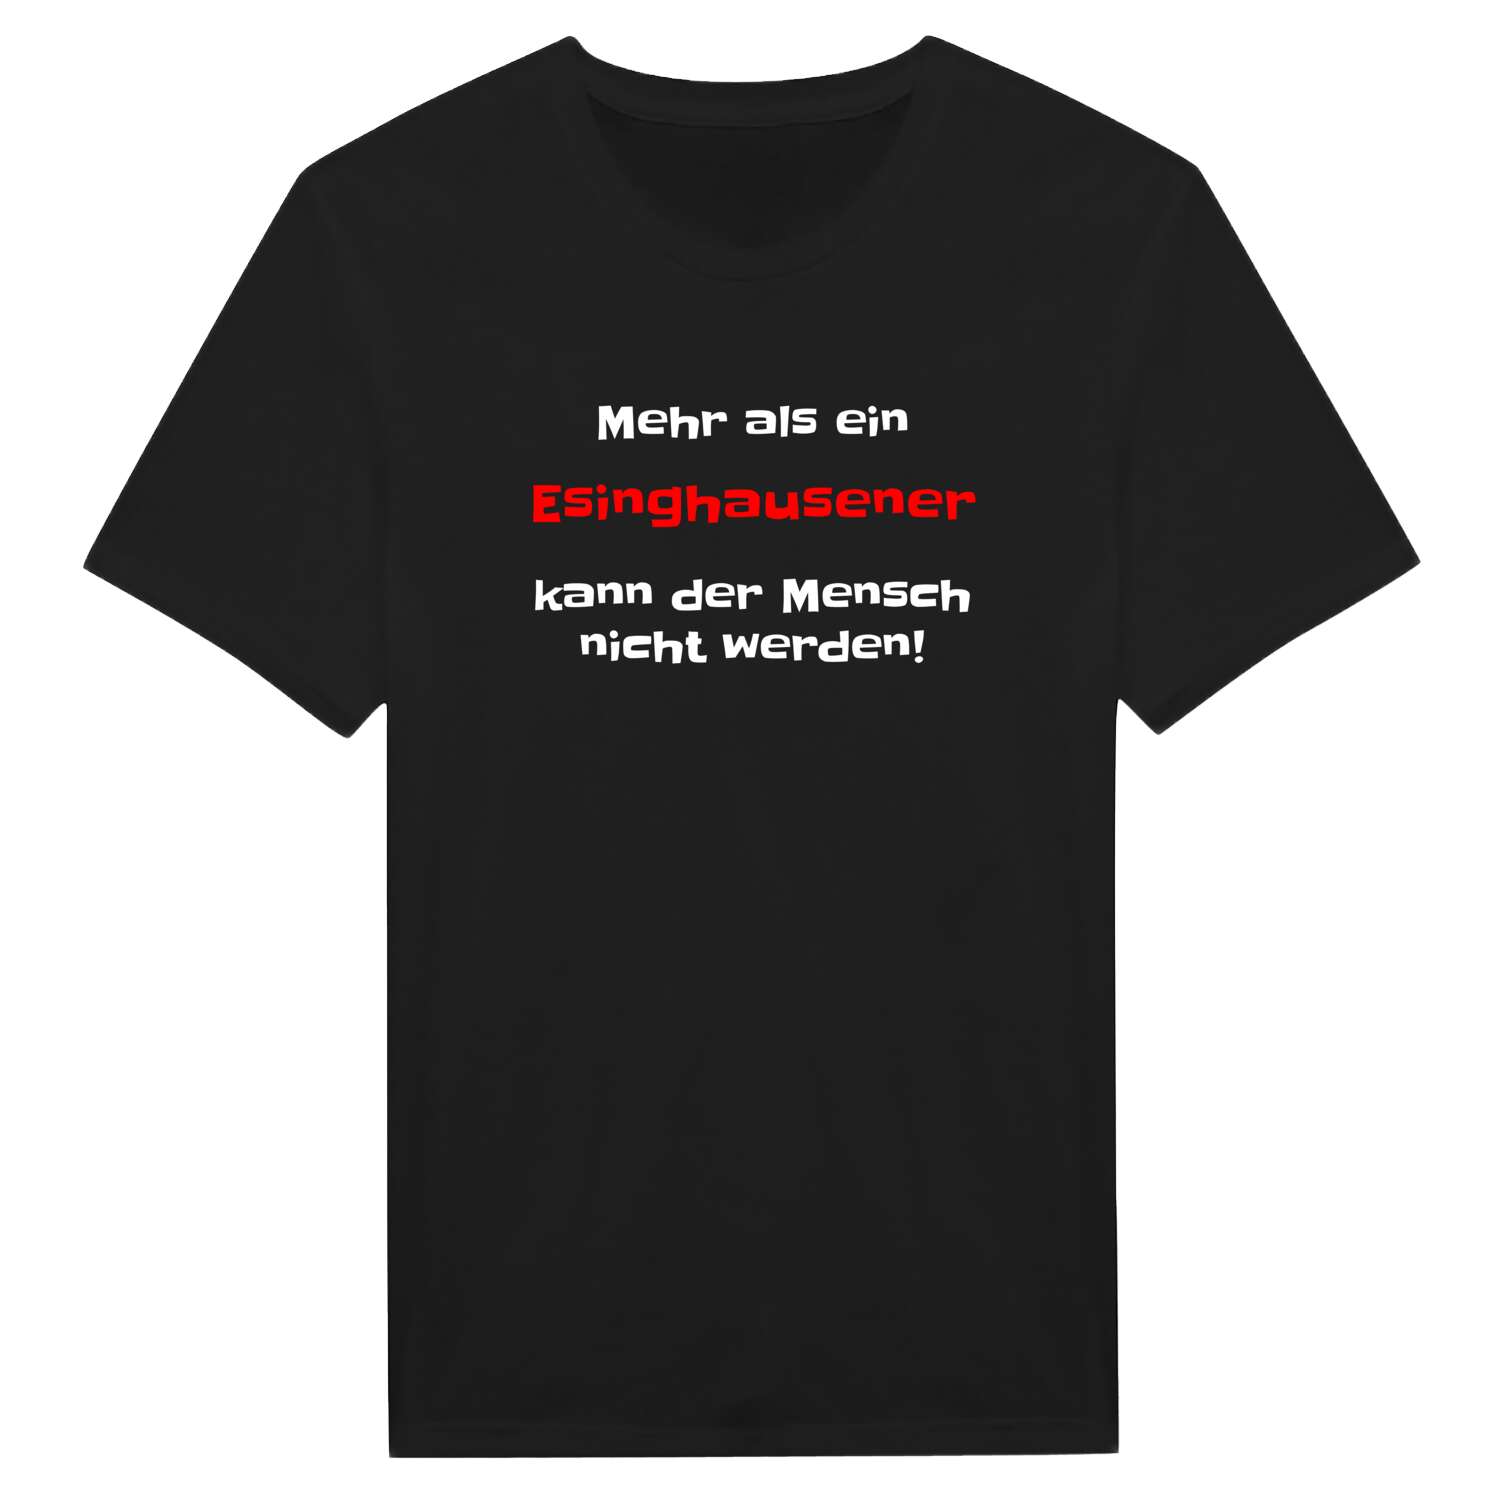 Esinghausen T-Shirt »Mehr als ein«